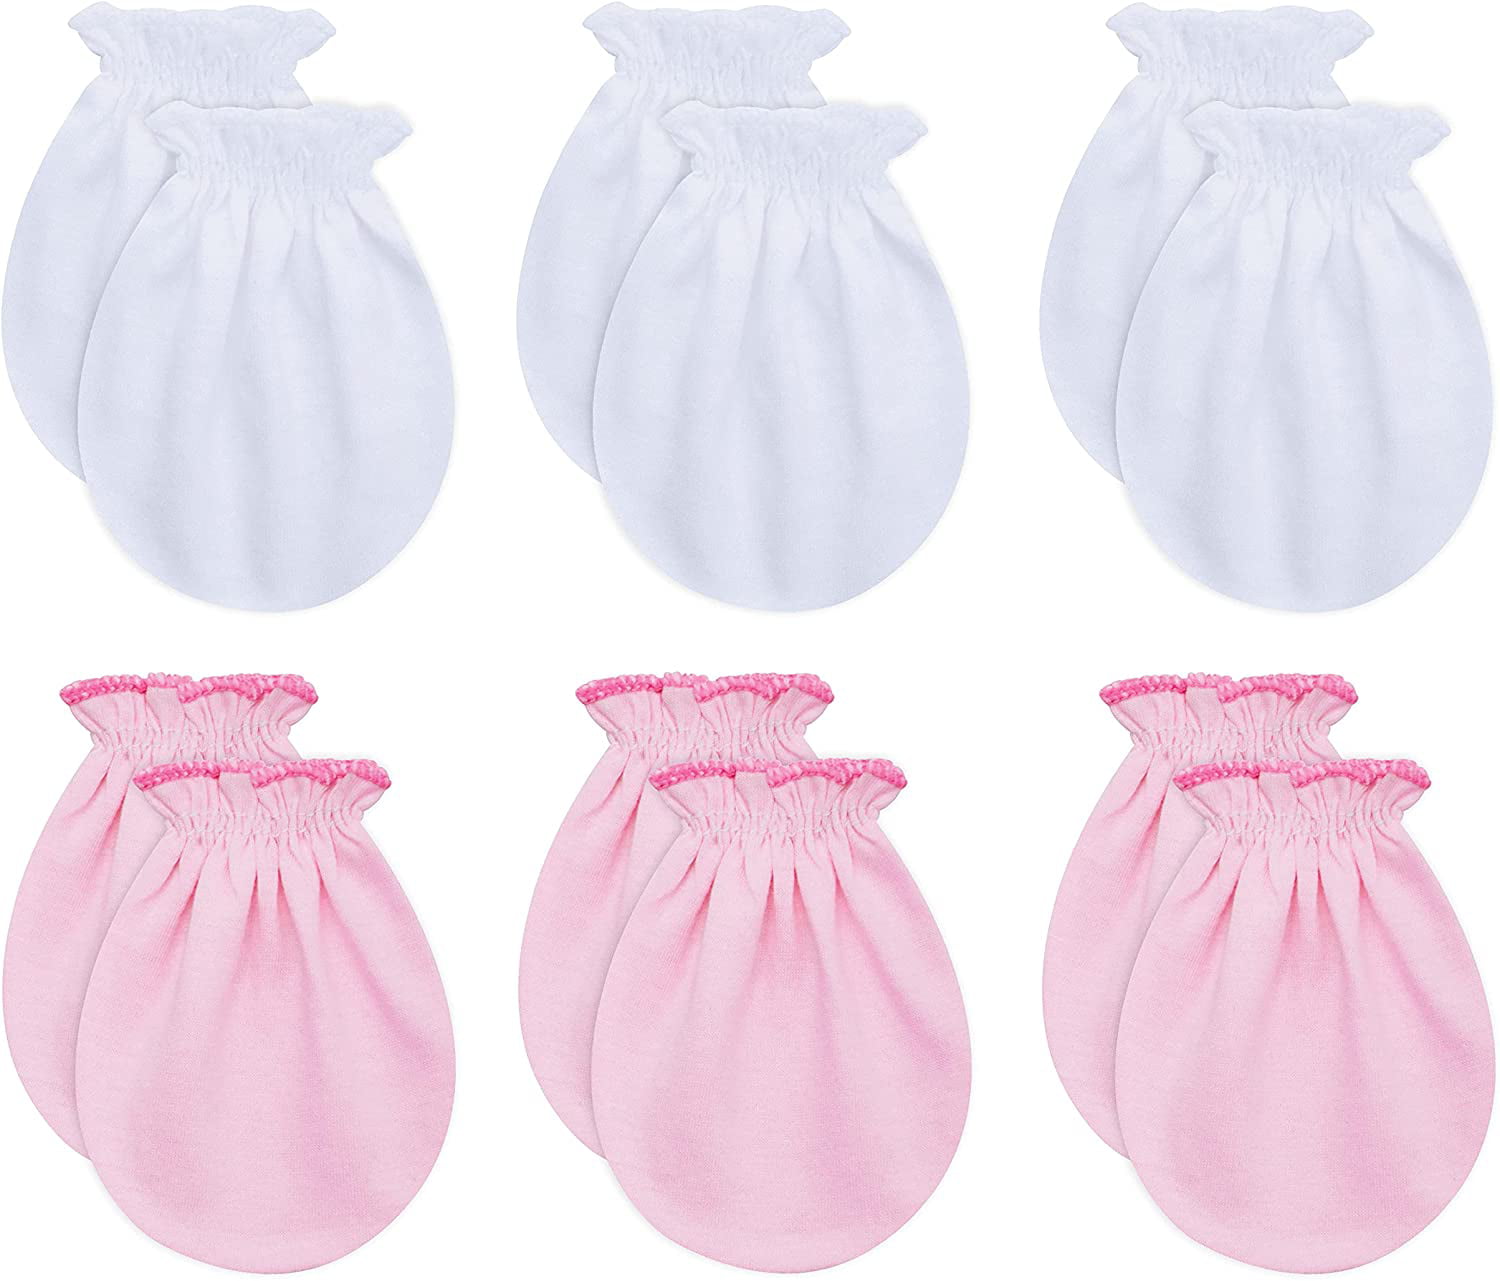 6 Pairs Newborn Baby Cotton Gloves No Scratch Mittens for 0-6 Months Boys Girls 100% Cotton 